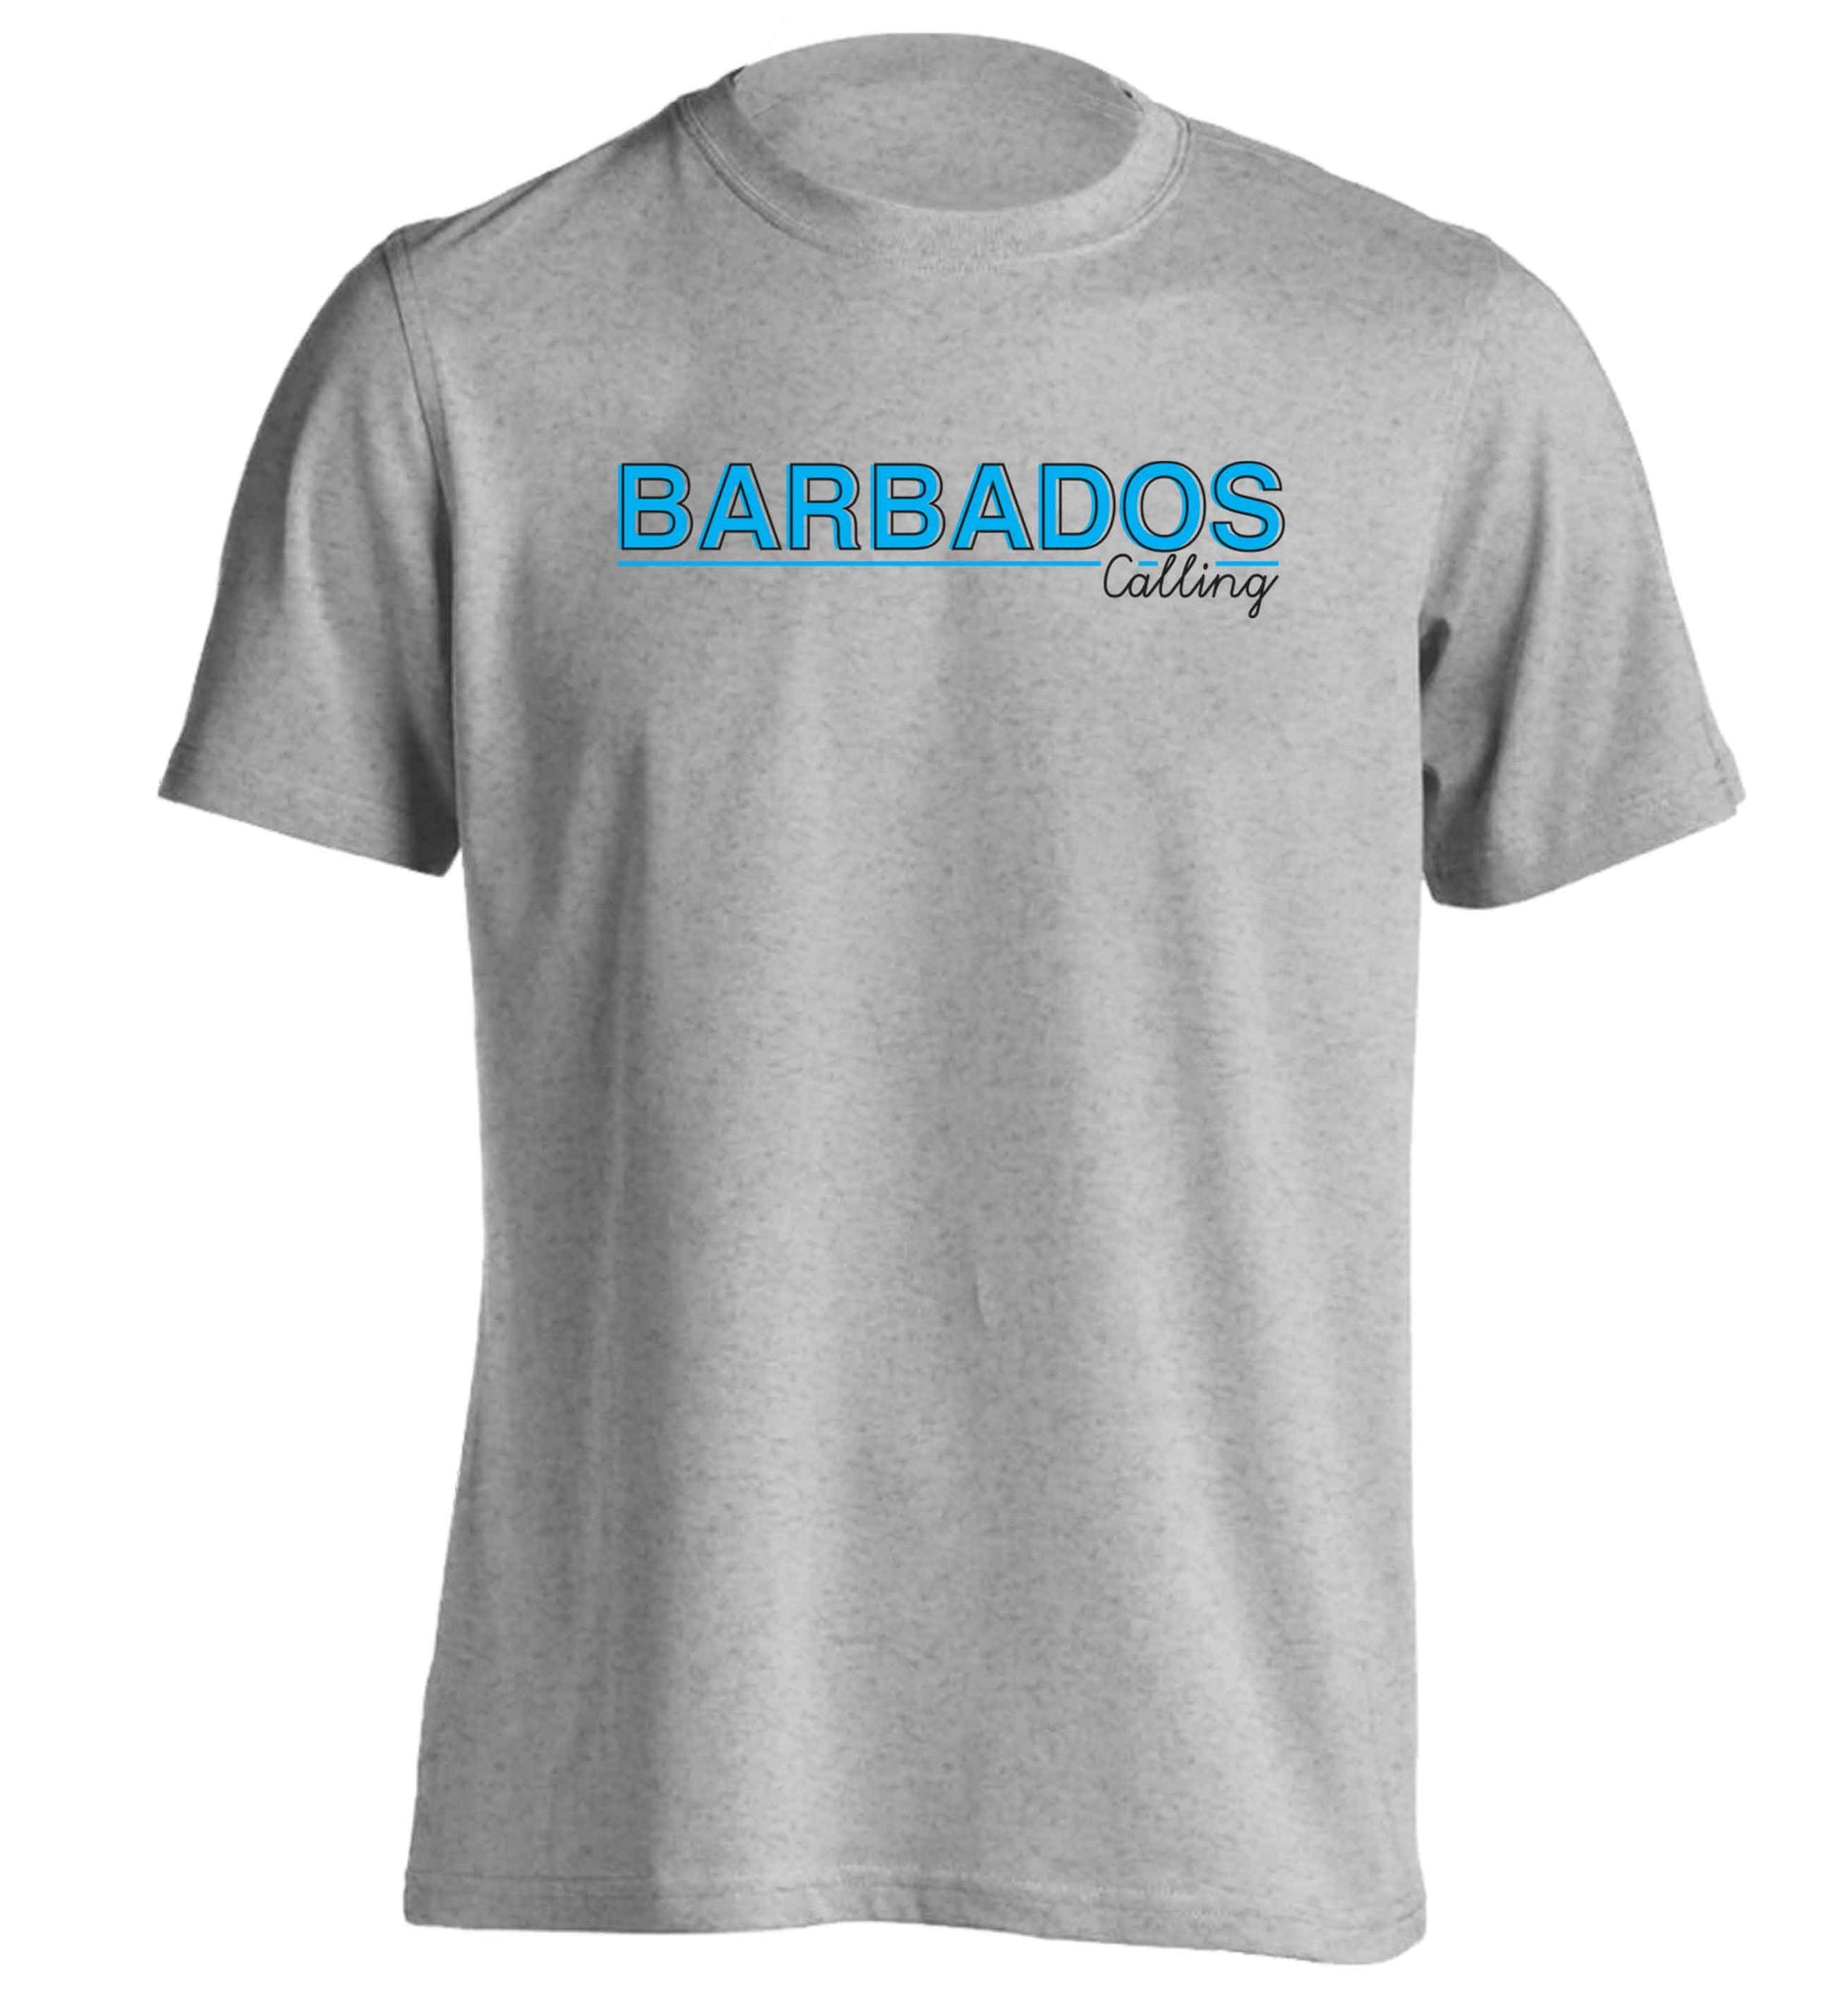 Barbados calling adults unisex grey Tshirt 2XL